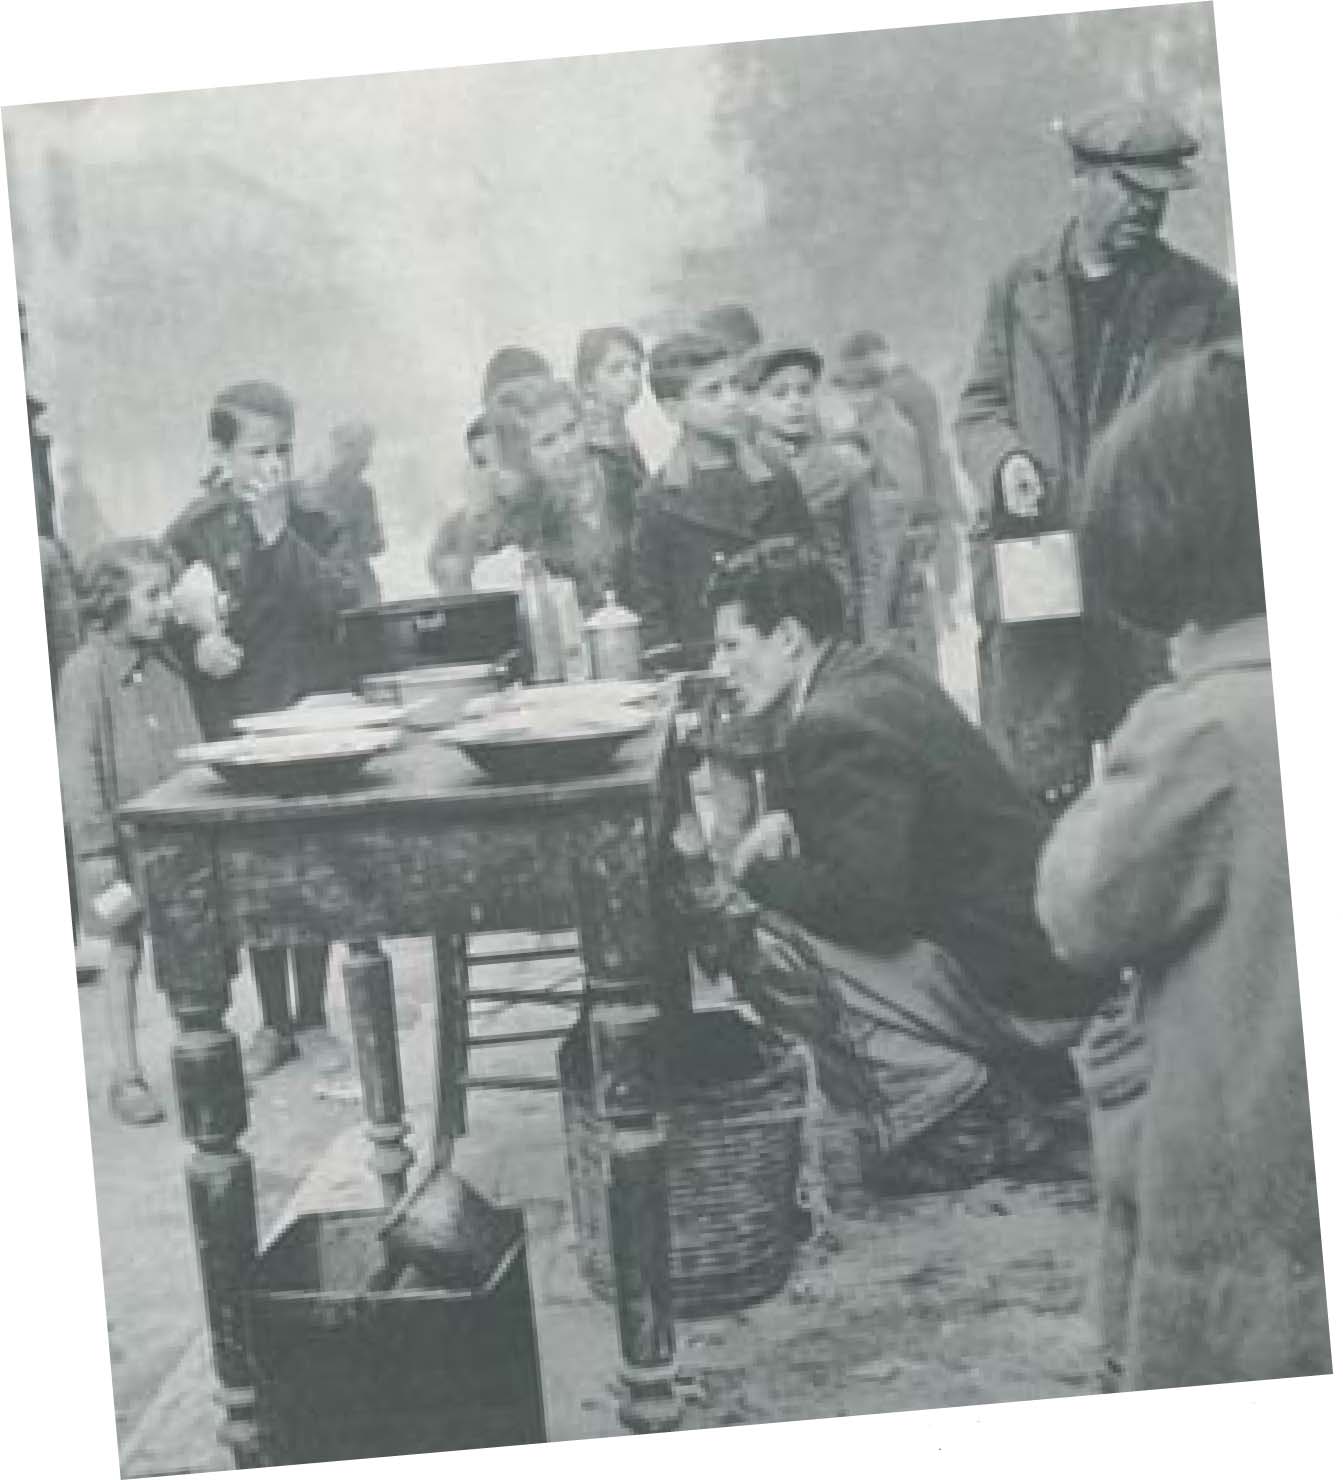 ∆εκέµβριος 1941. Συσσίτιο για τα πεινασµένα παιδιά σε µια γειτονιά της Αθήνας, την περίοδο της γερµανικής κατοχής.